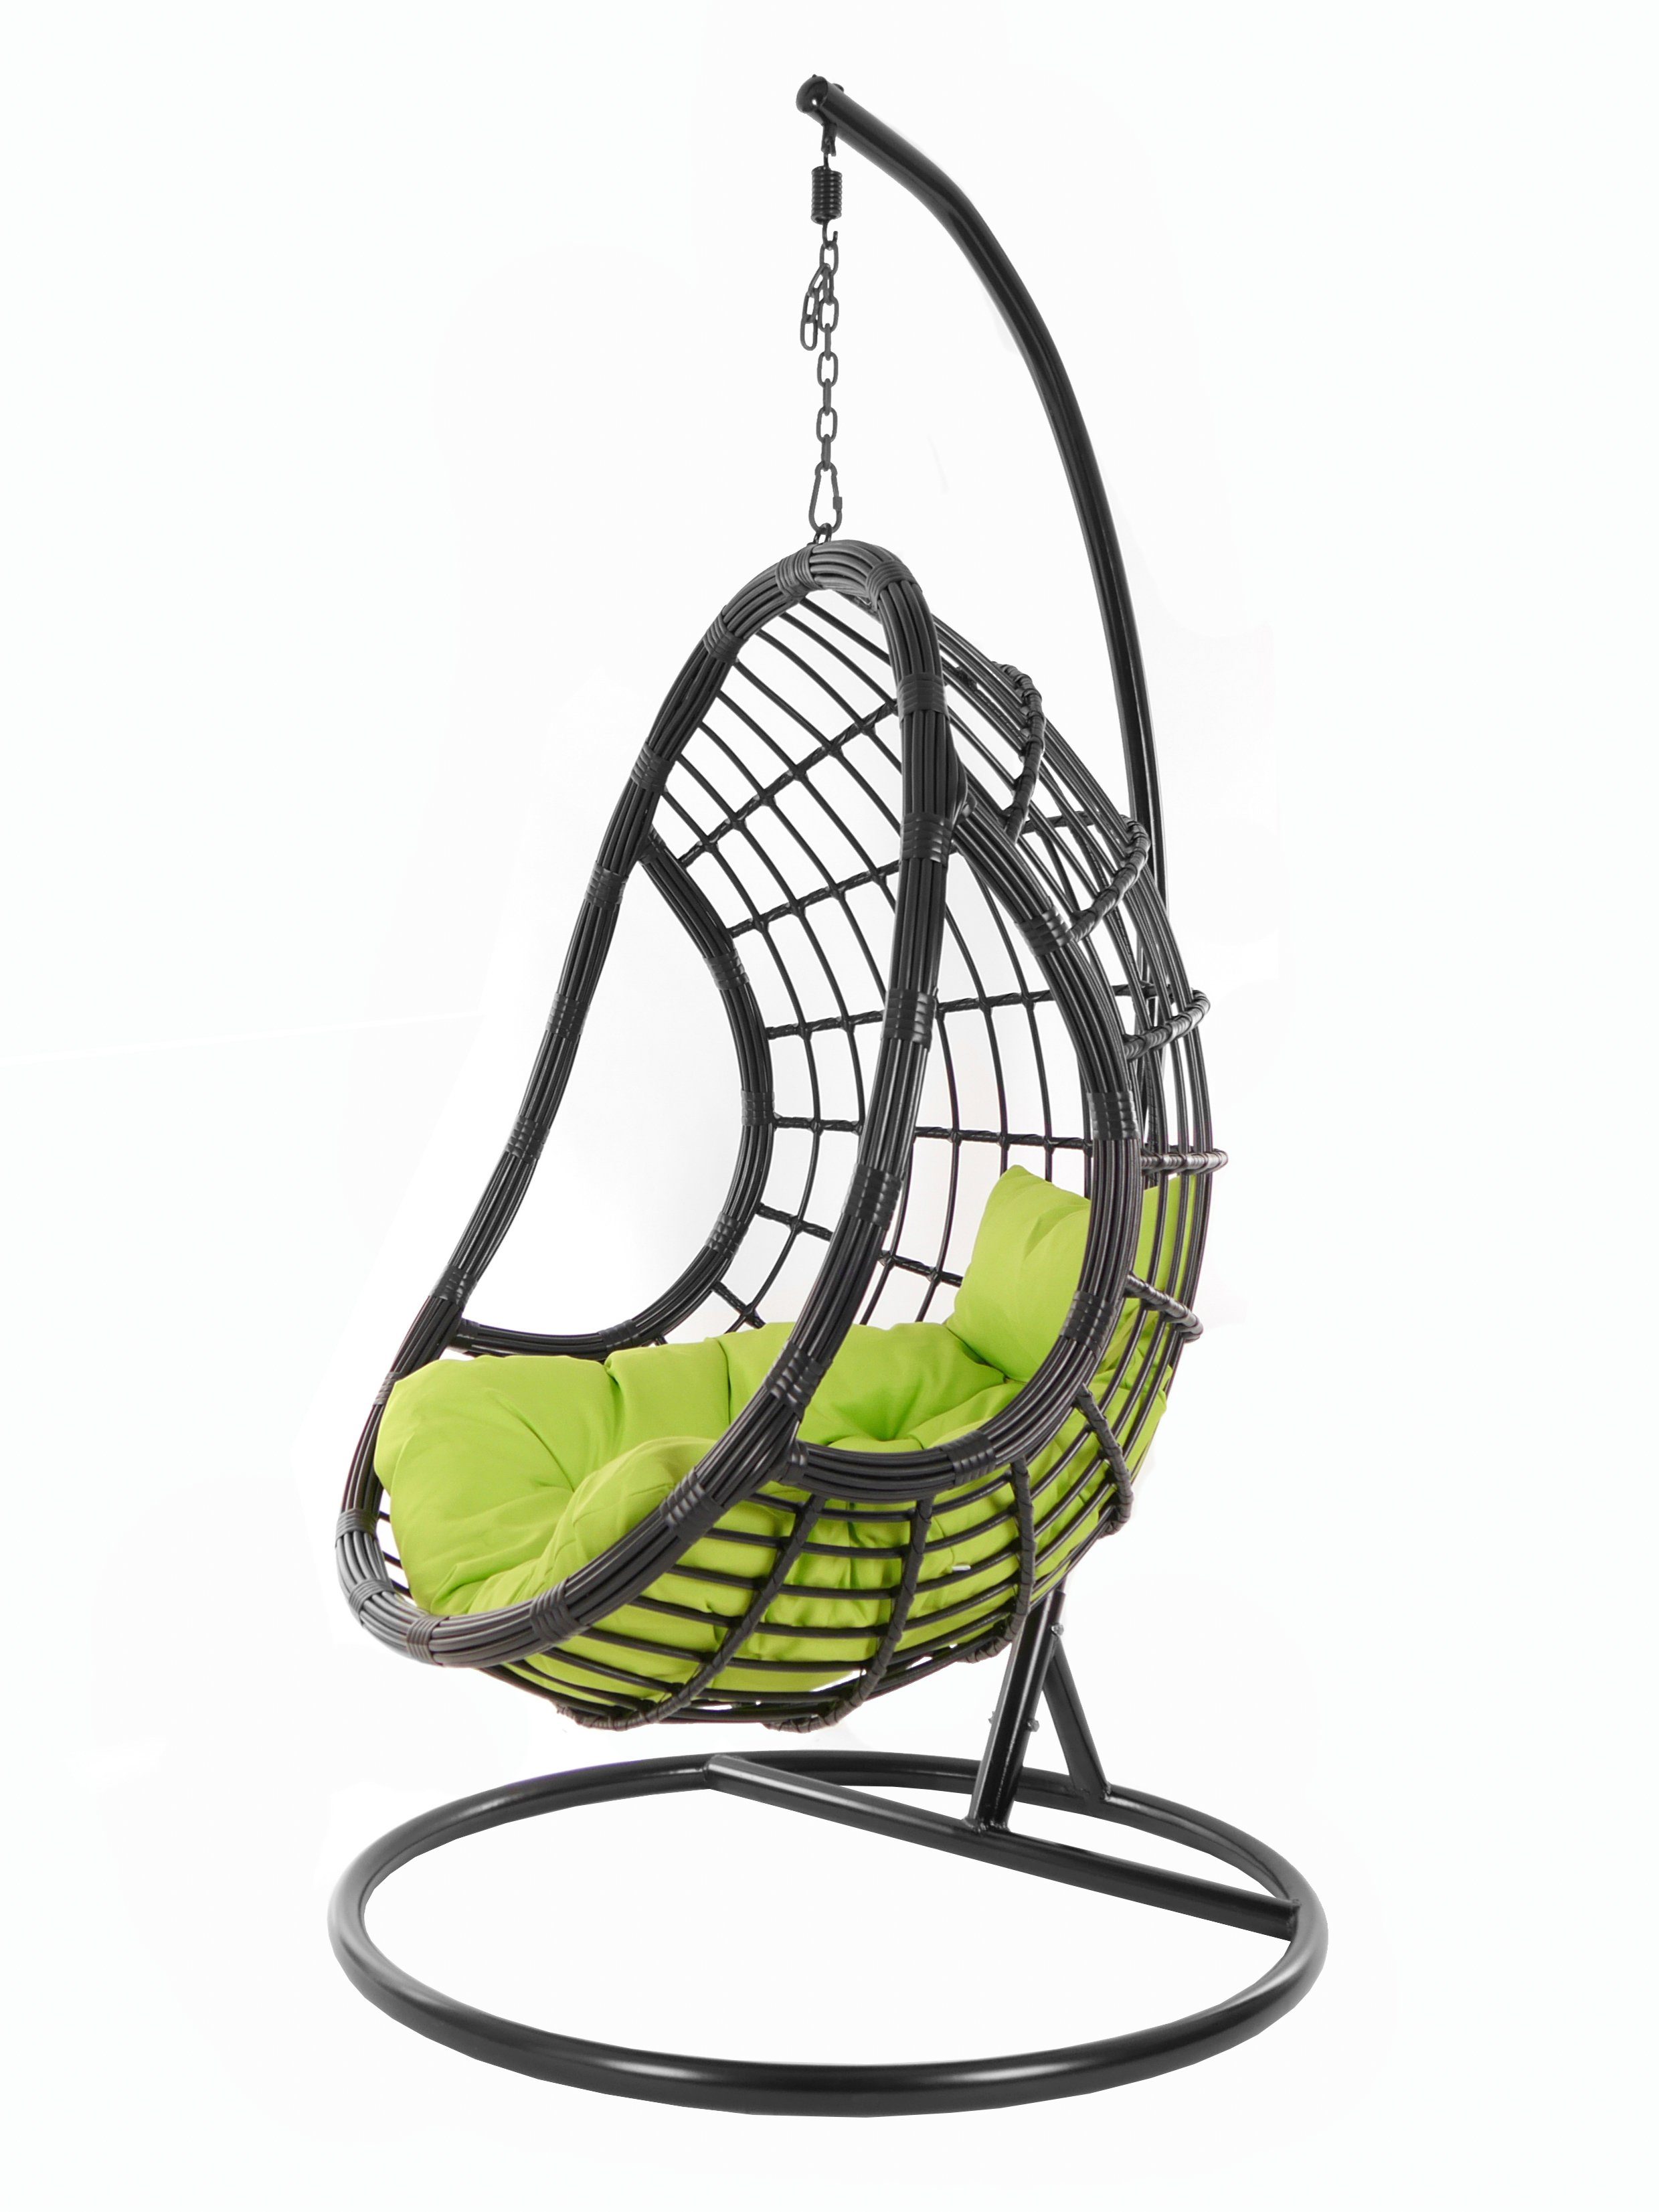 KIDEO Hängesessel PALMANOVA black, Swing Chair, schwarz, Loungemöbel, Hängesessel mit Gestell und Kissen, Schwebesessel, edles Design apfelgrün (6068 apple green)